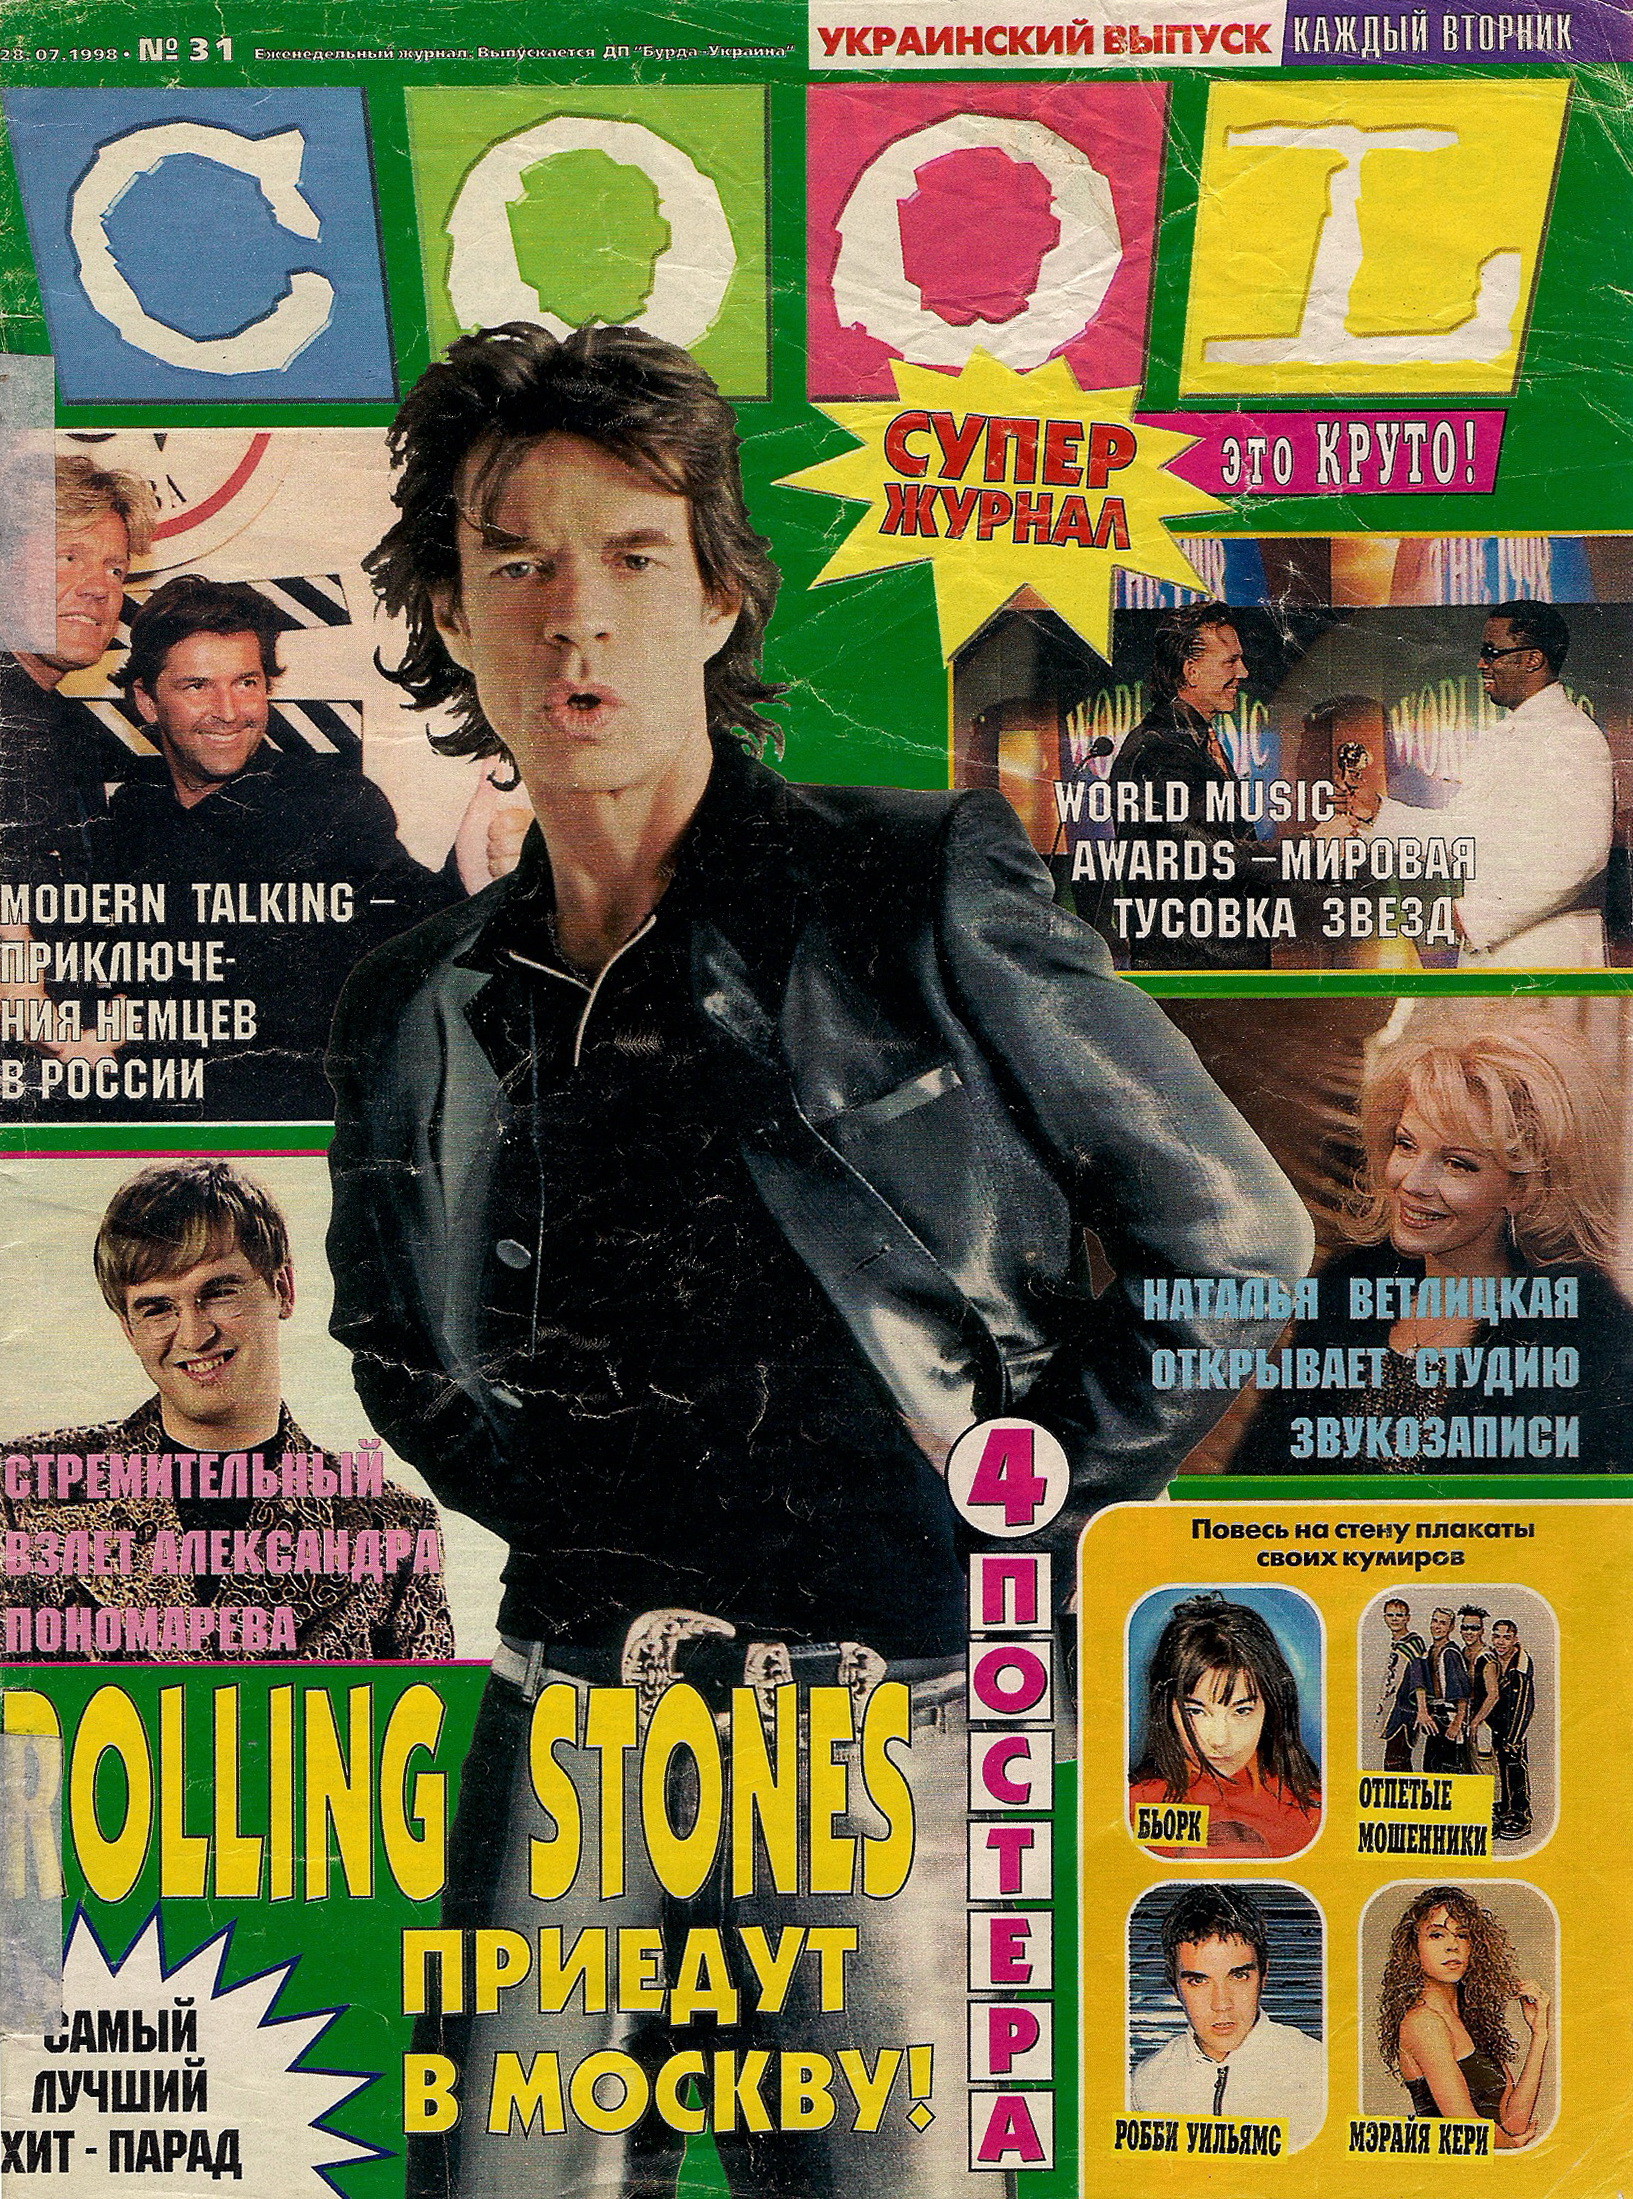 Когда вышел 1 выпуск. Журнал cool. Журналы 90-х годов. Постеры из журналов. Постеры из журналов 90-х.